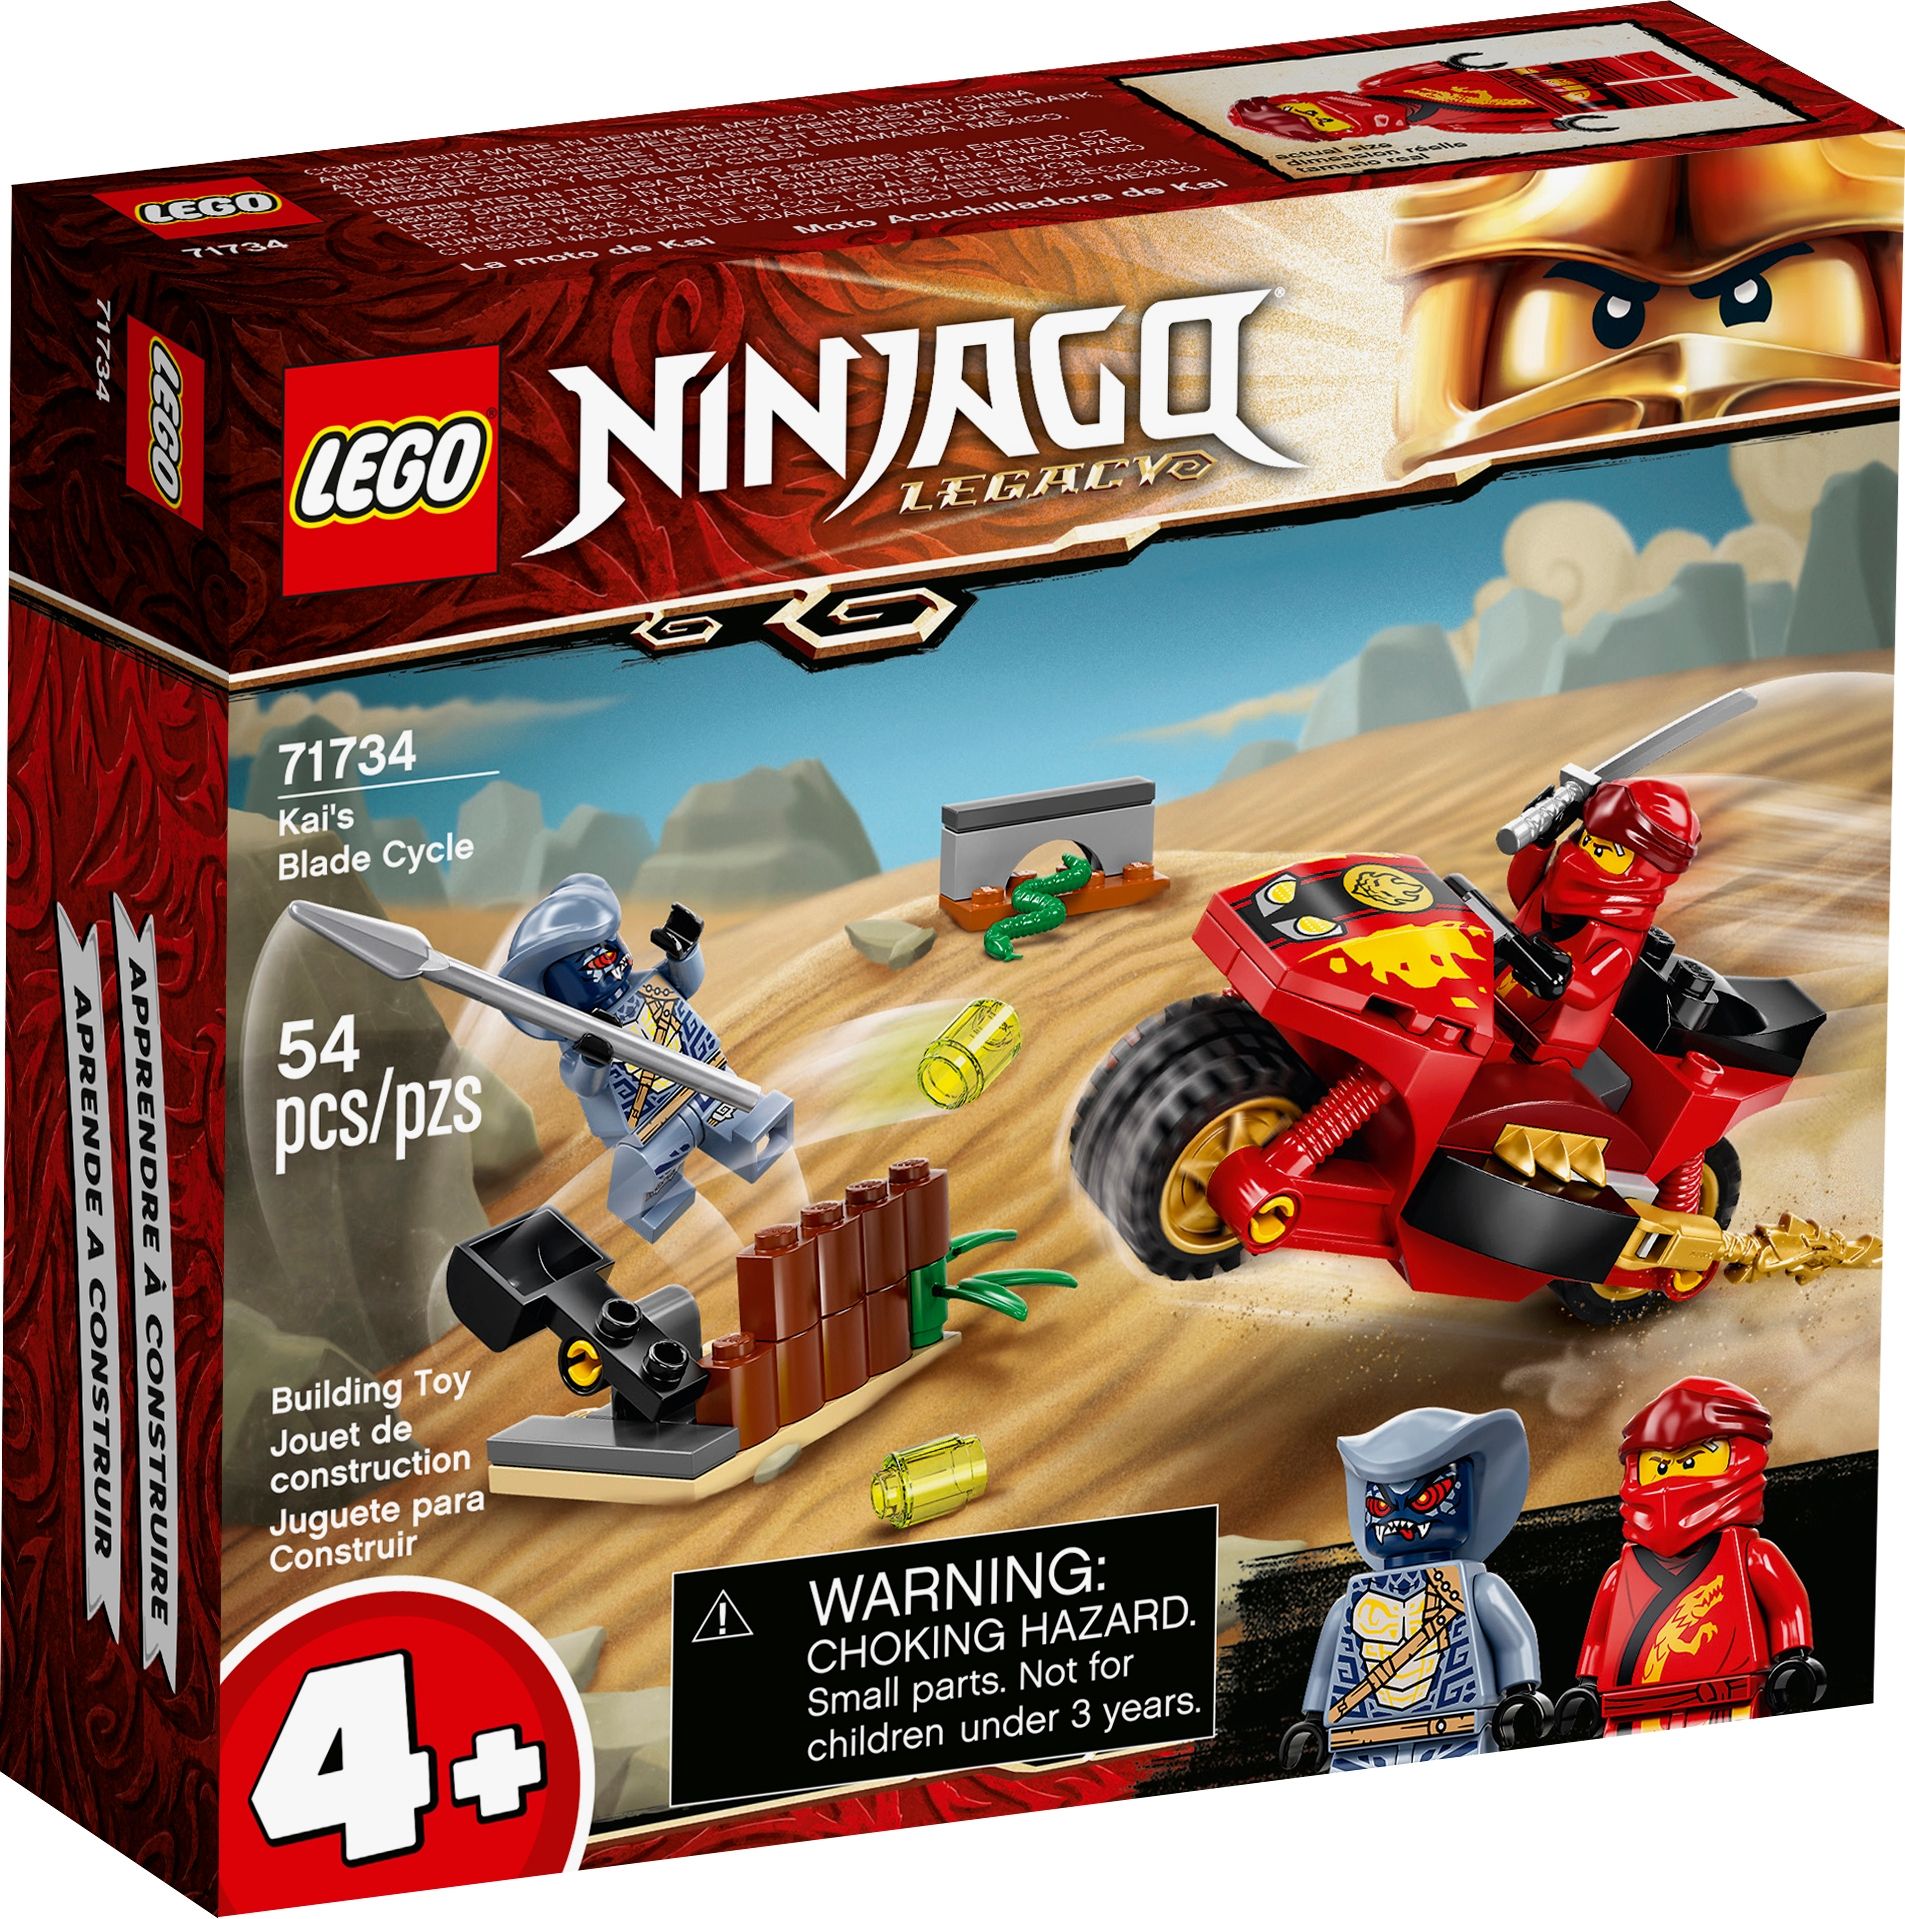 LEGO Ninjago 71734 Kais Feuer-Bike LEGO_71734_alt1.jpg